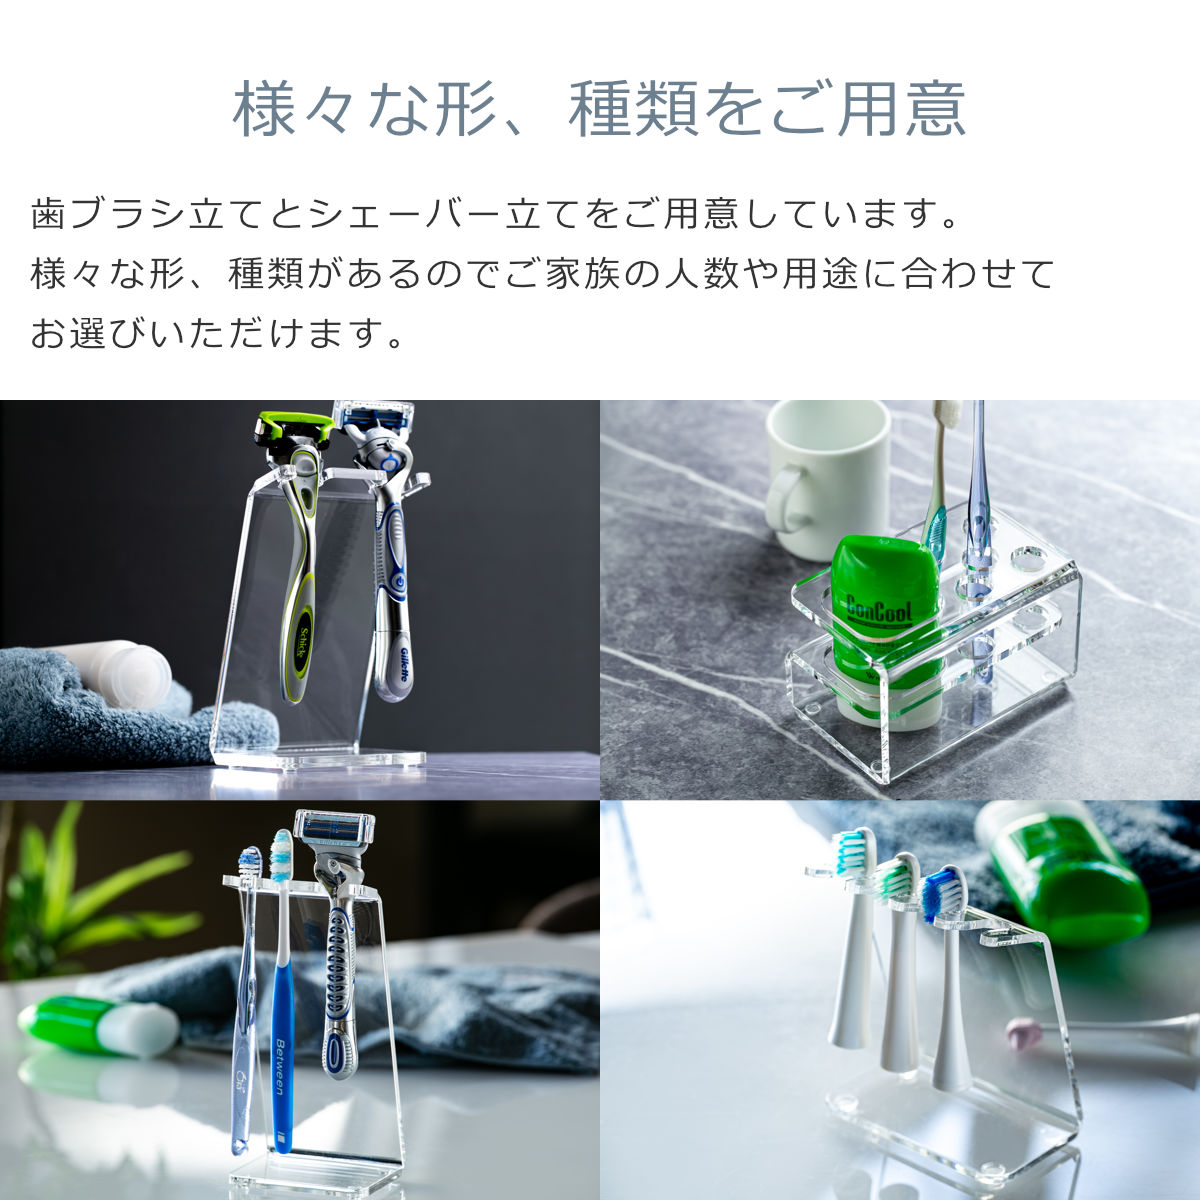 【日本製】 歯ブラシスタンド Z型 amenist 透明 004-604 アクリル製 歯ブラシ立て 5本 クリア